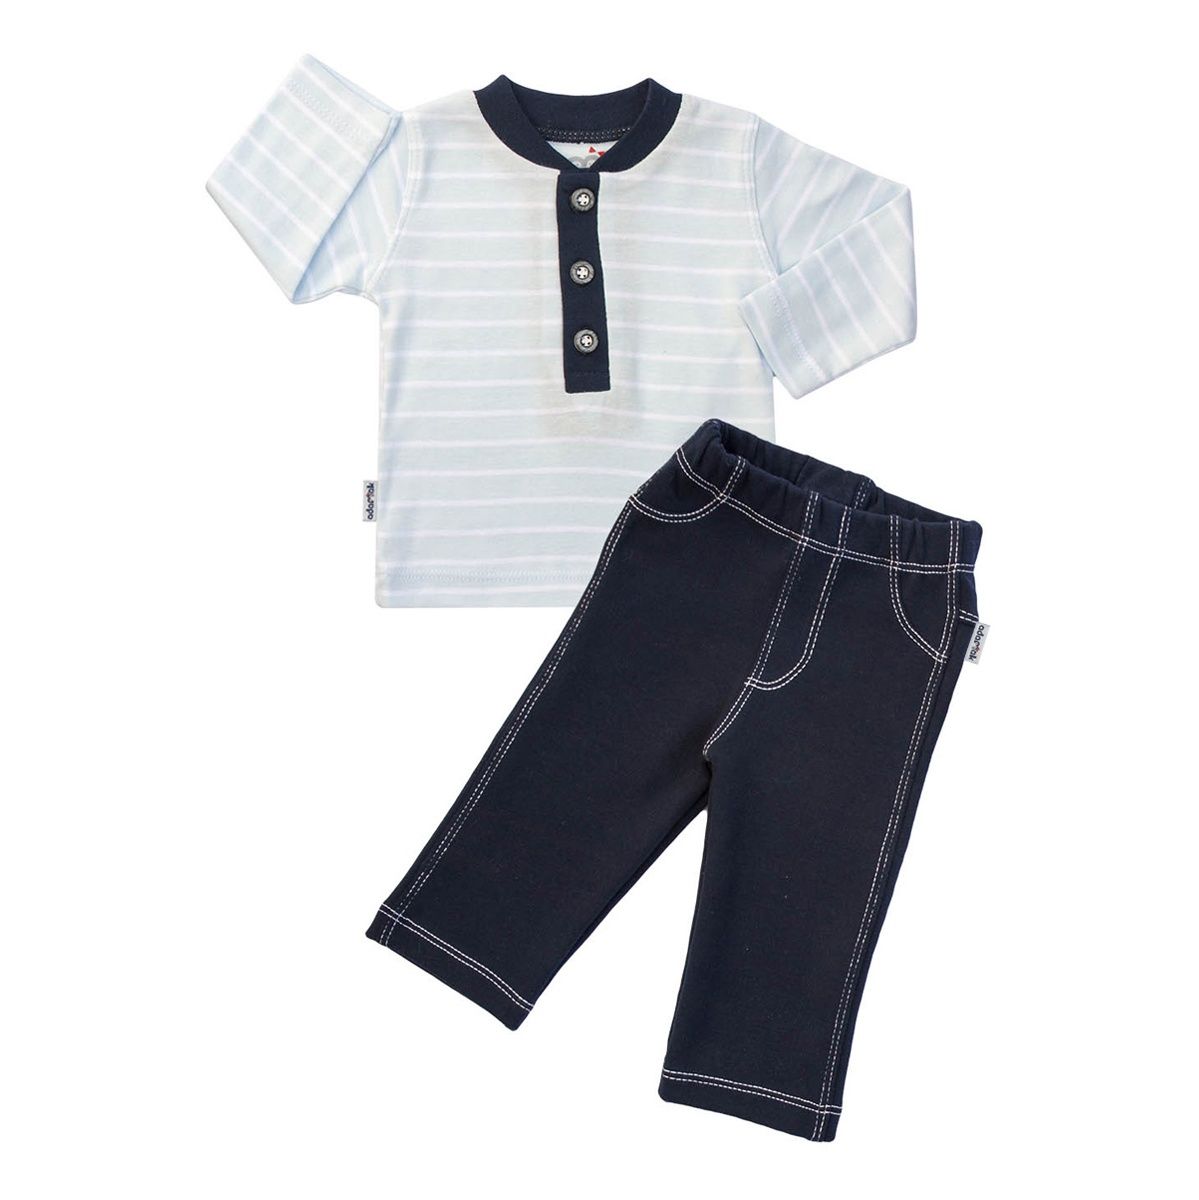 ست تی شرت و شلوار نوزادی پسرانه آدمک مدل 1155011 کد 02 -  - 1